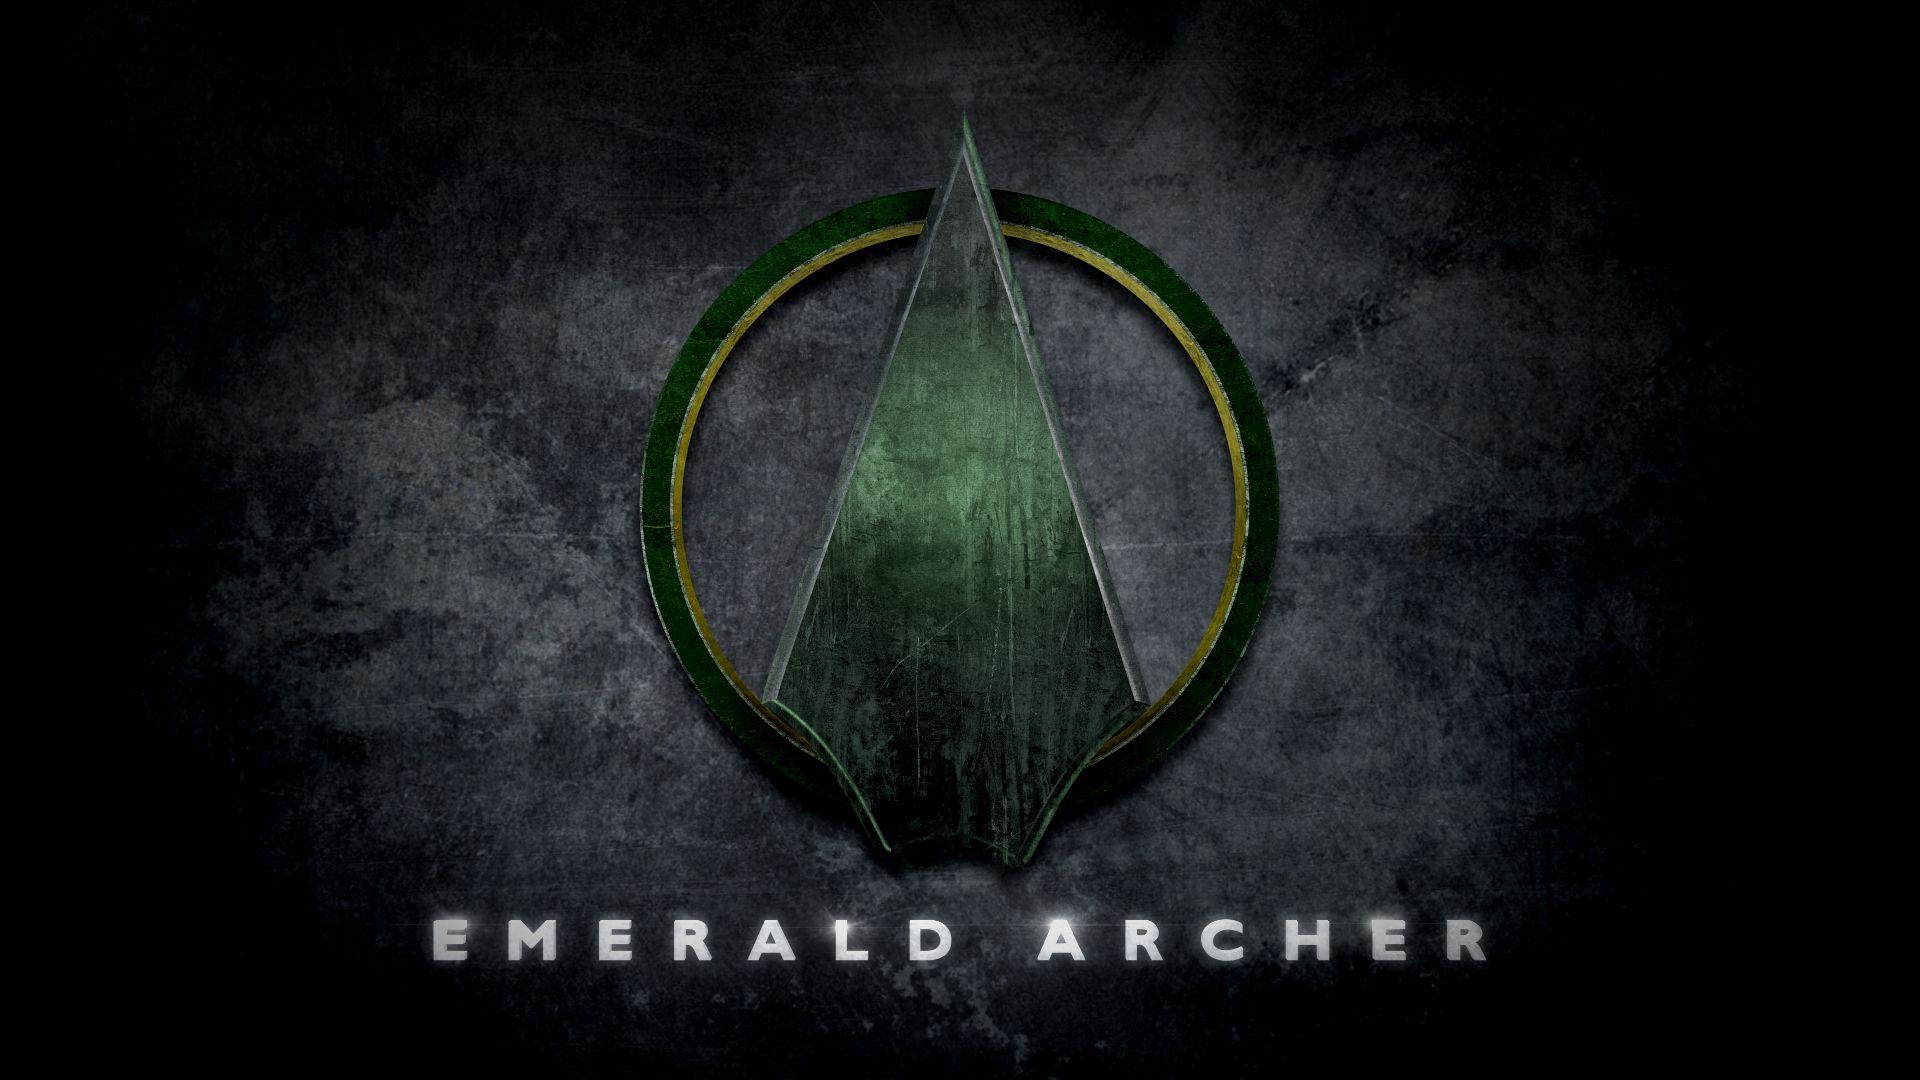 Green Arrowhead Logo - Dc arrow Logos